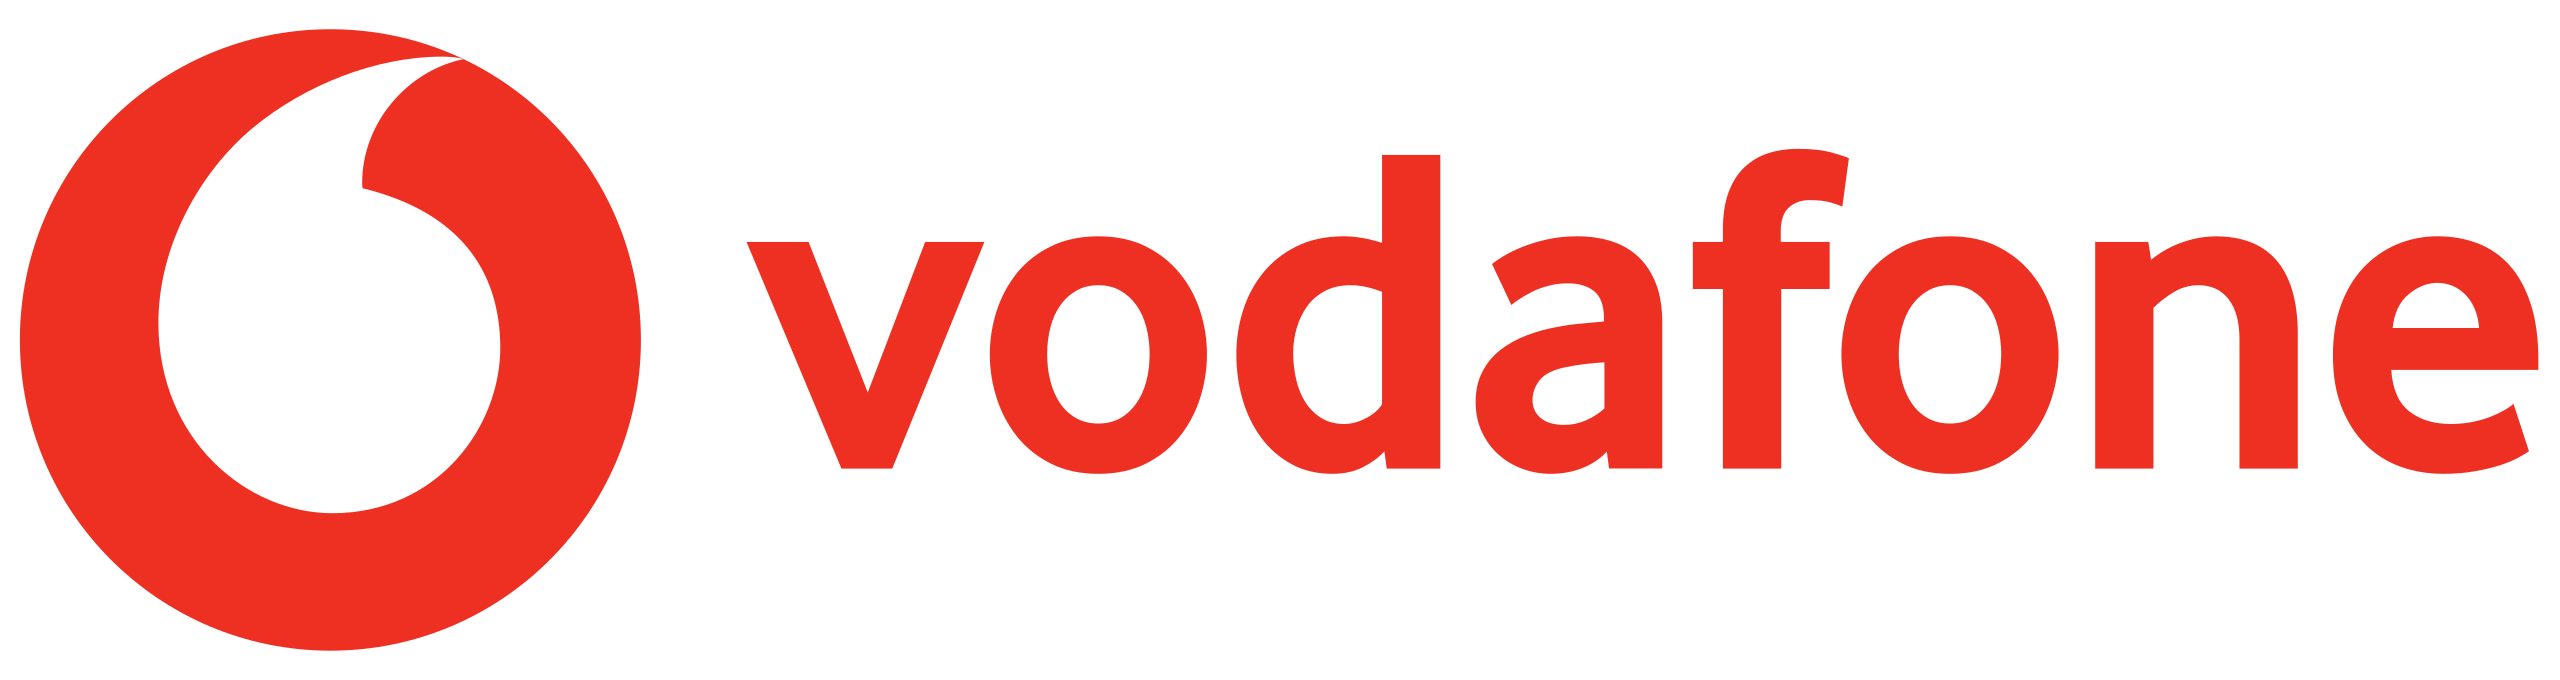 Vodafone Australia Brand Logo